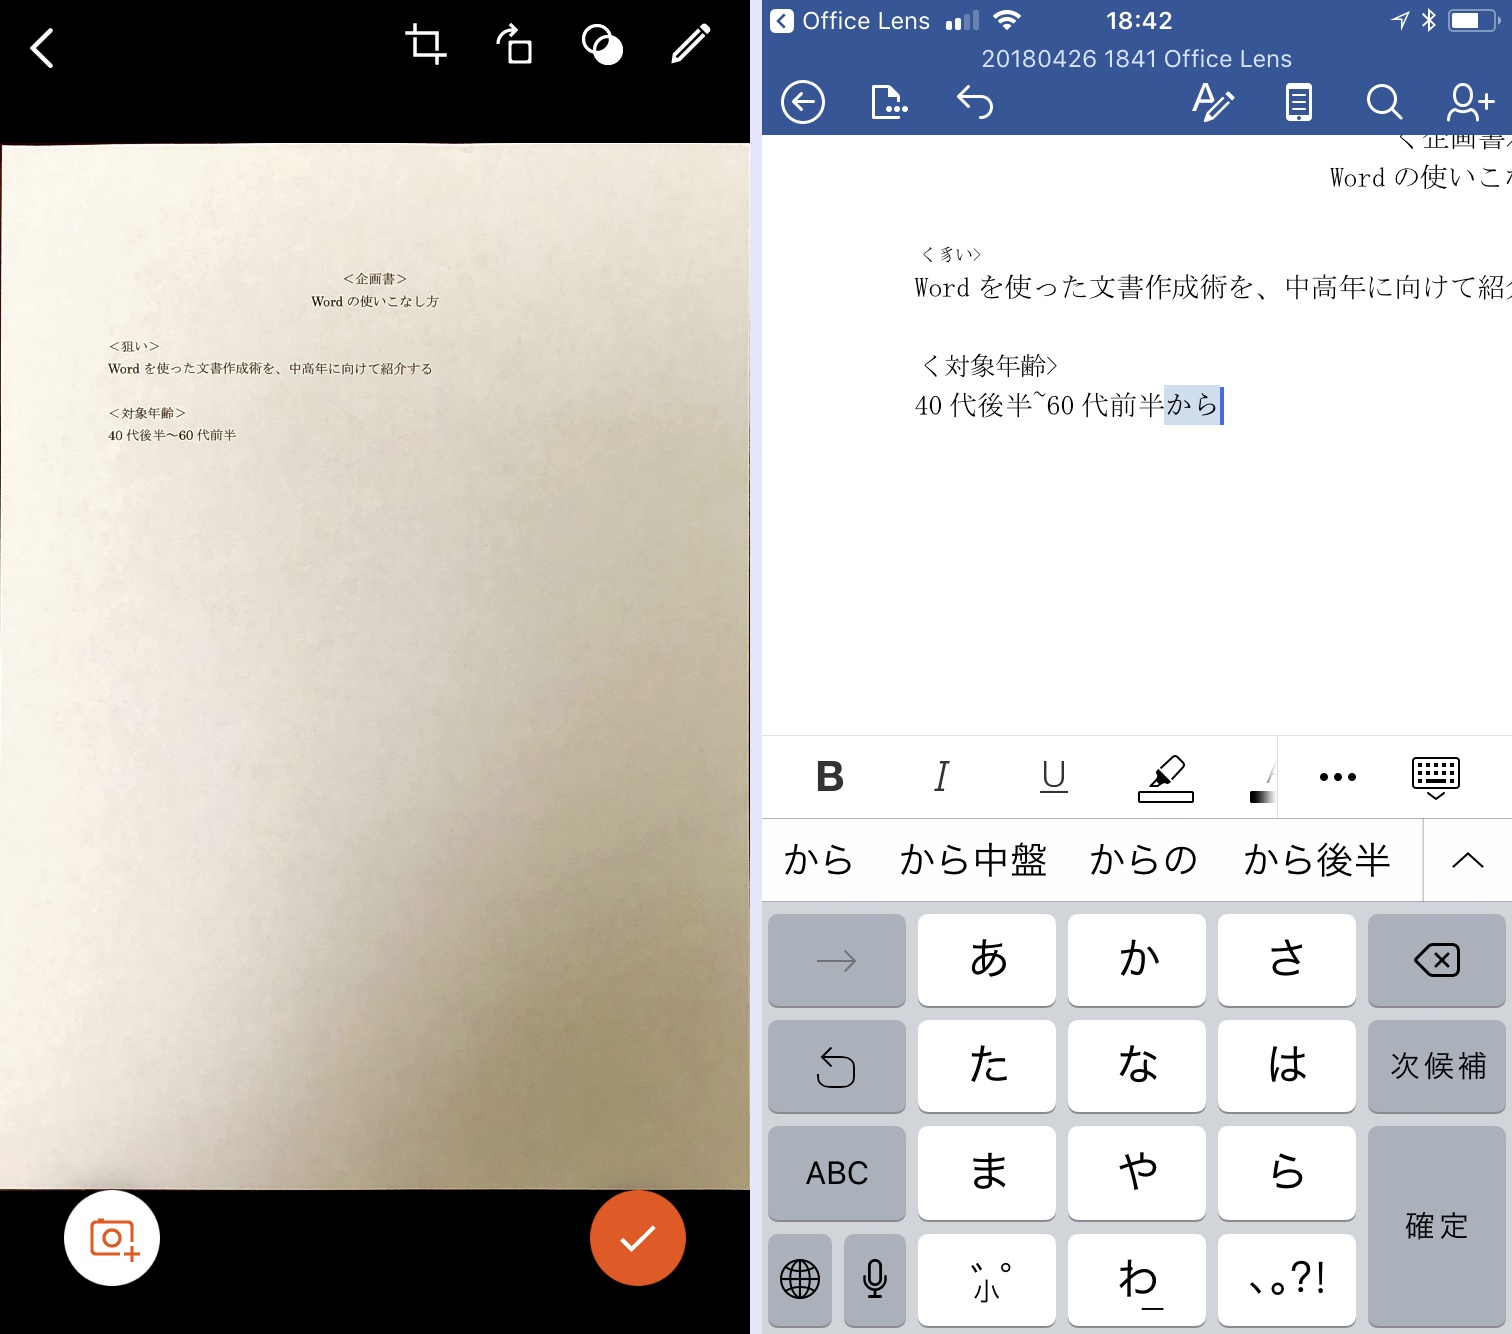 Iphoneで使える Office Lens がすごい 紙の書類をデータ化して編集までできちゃう Iphone Tips Engadget 日本版